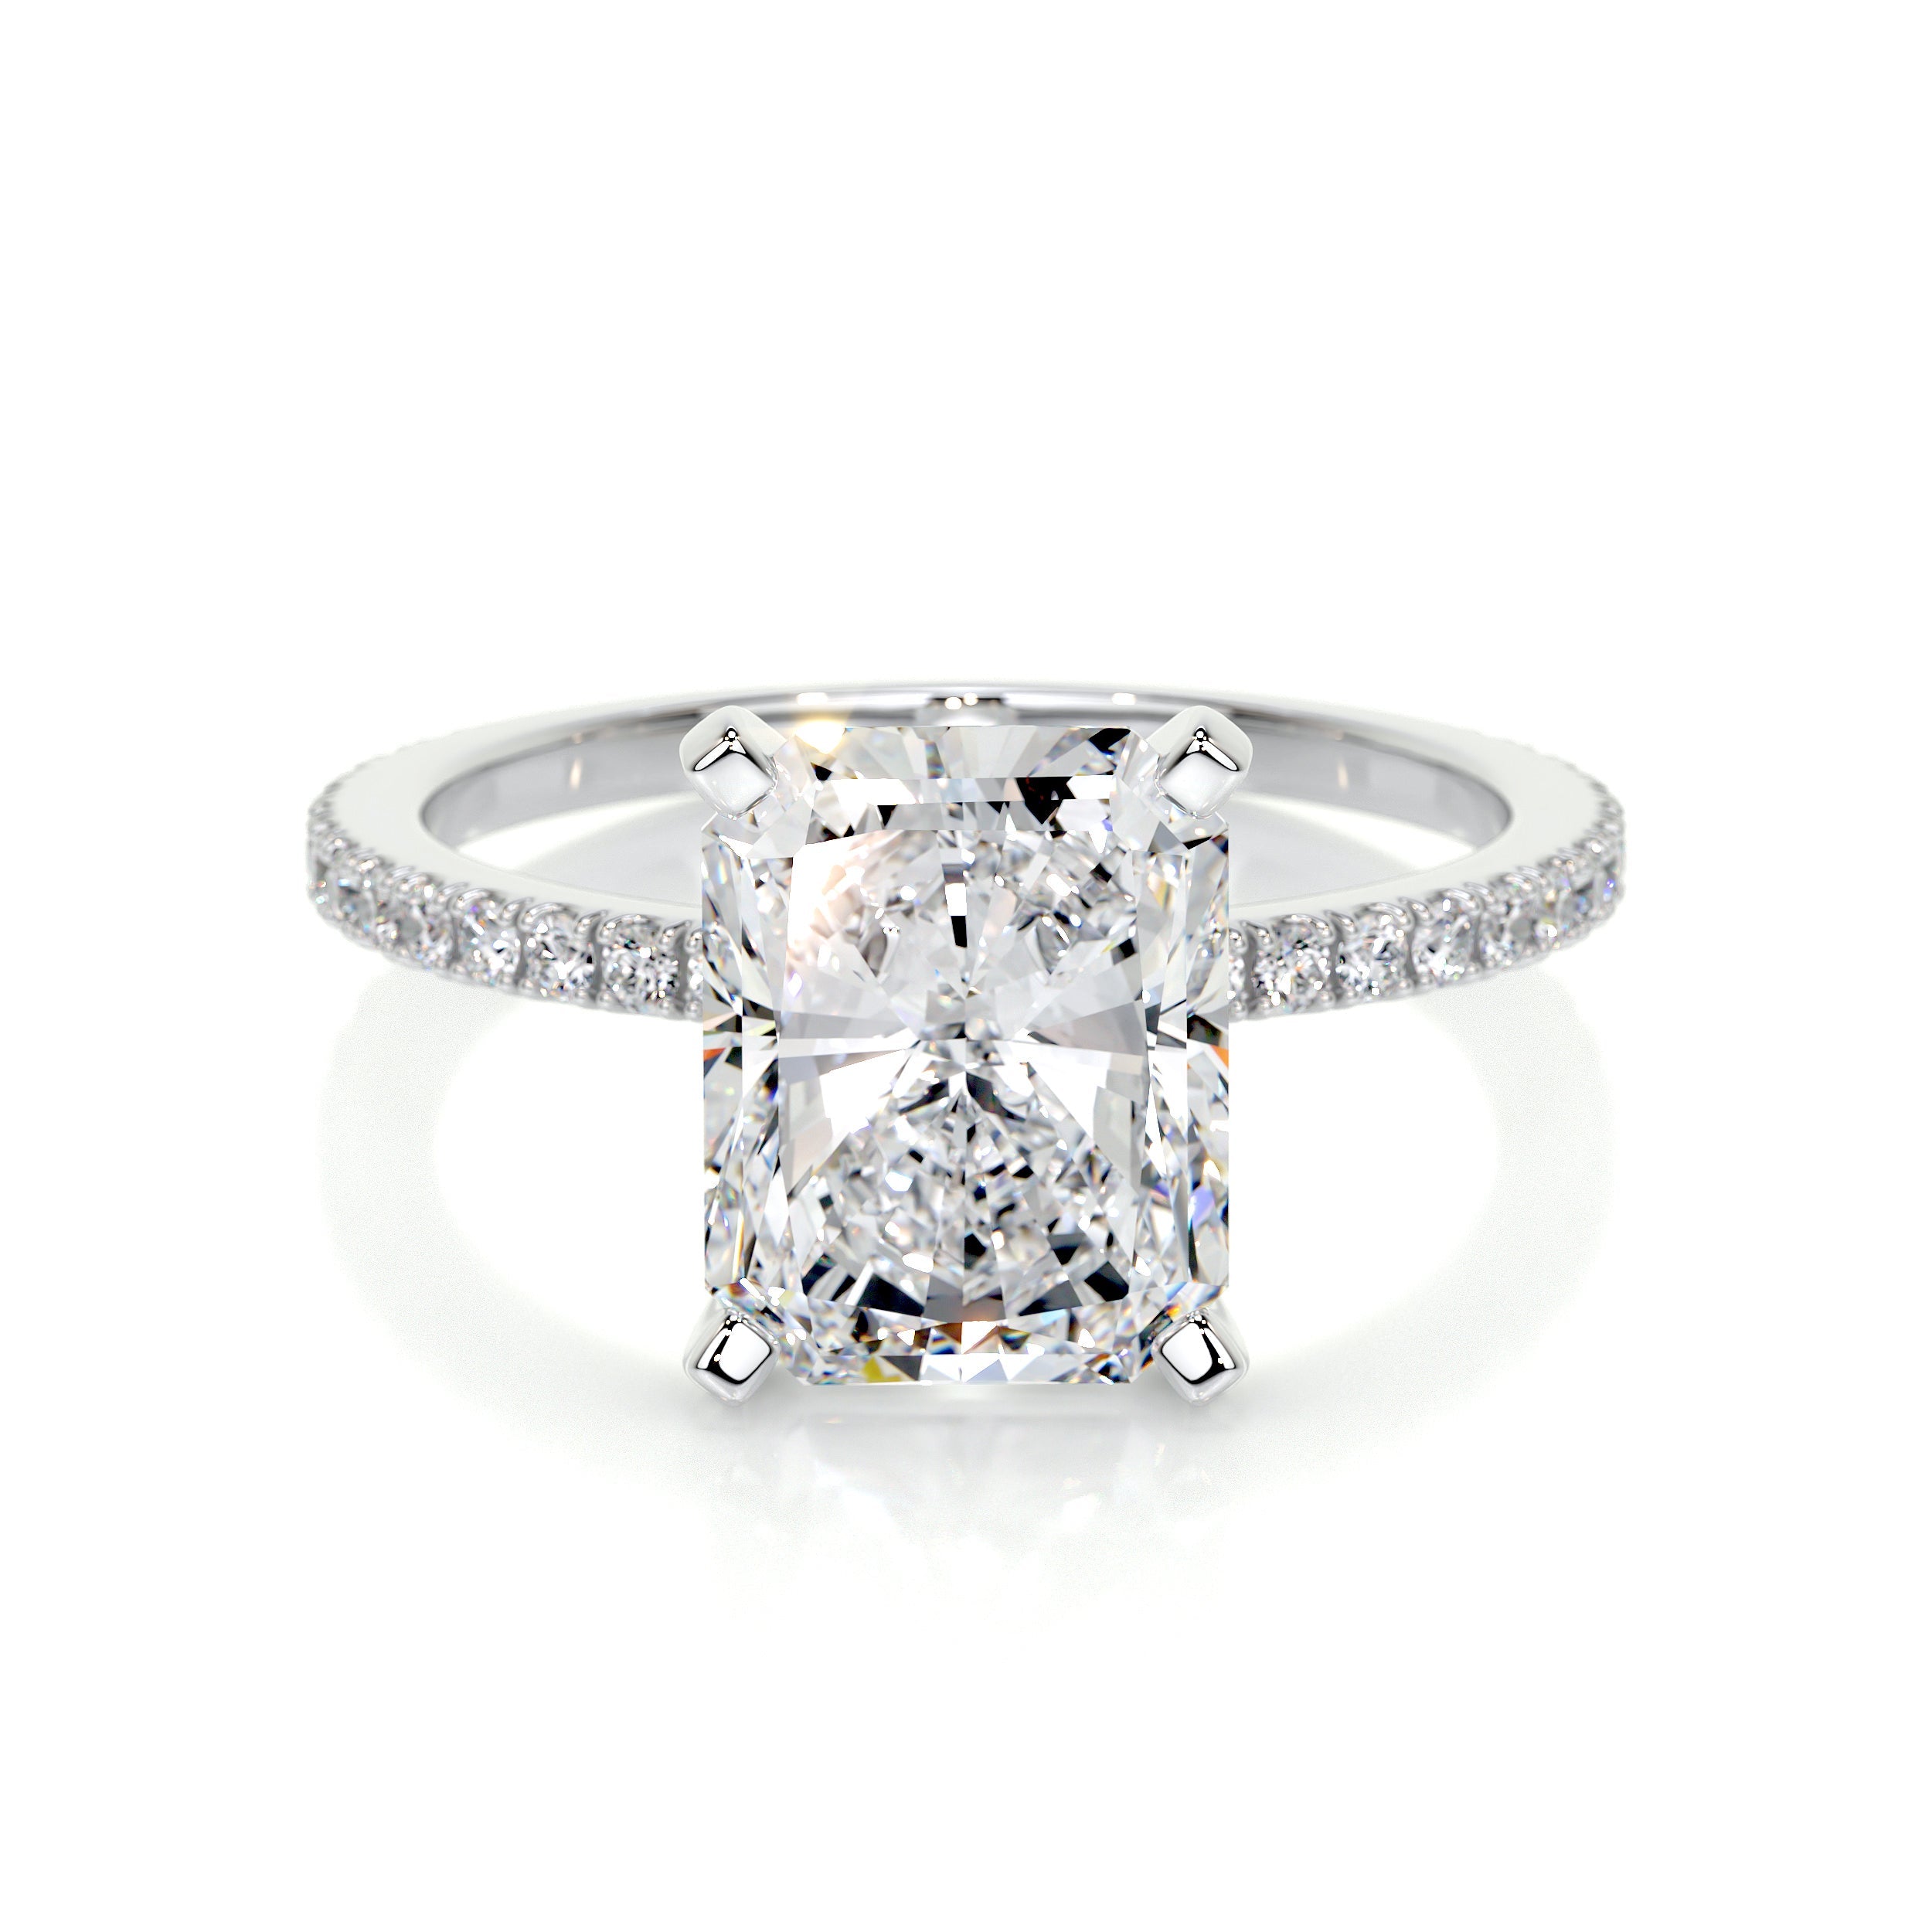 Audrey Lab Grown Diamond Ring   (3.5 Carat) -14K White Gold